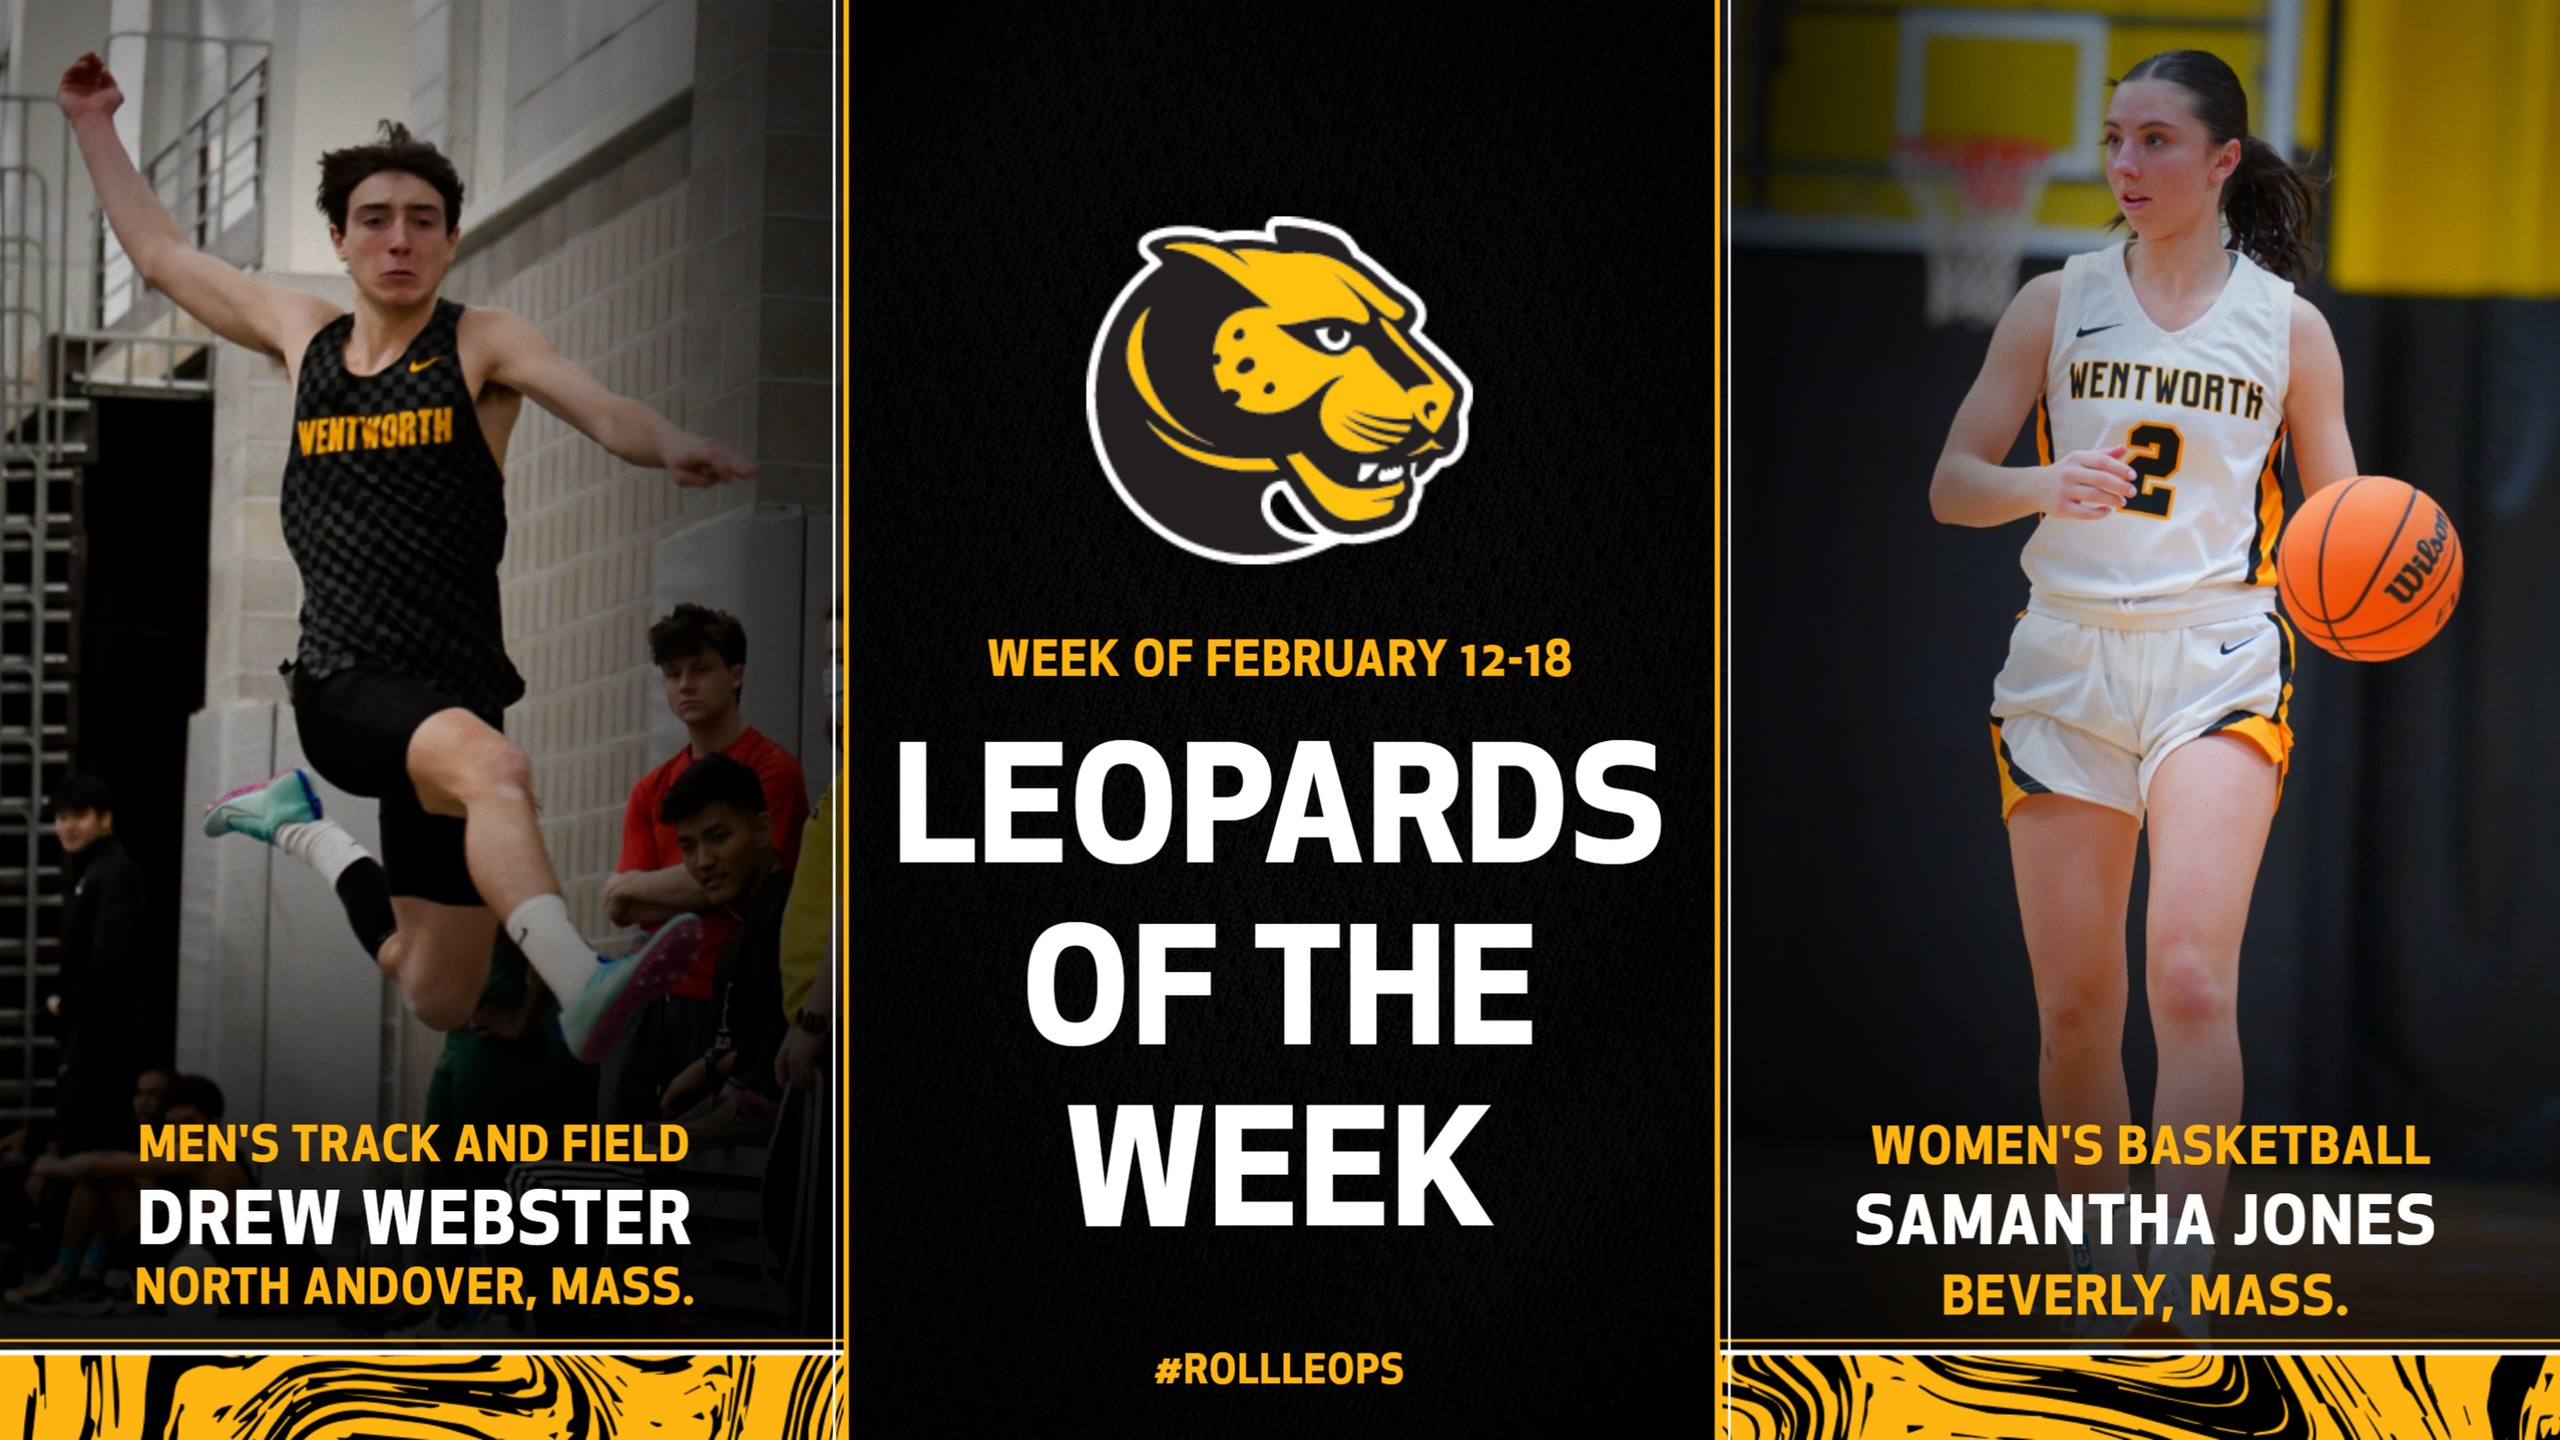 Webster, Jones Named Leopards of the Week